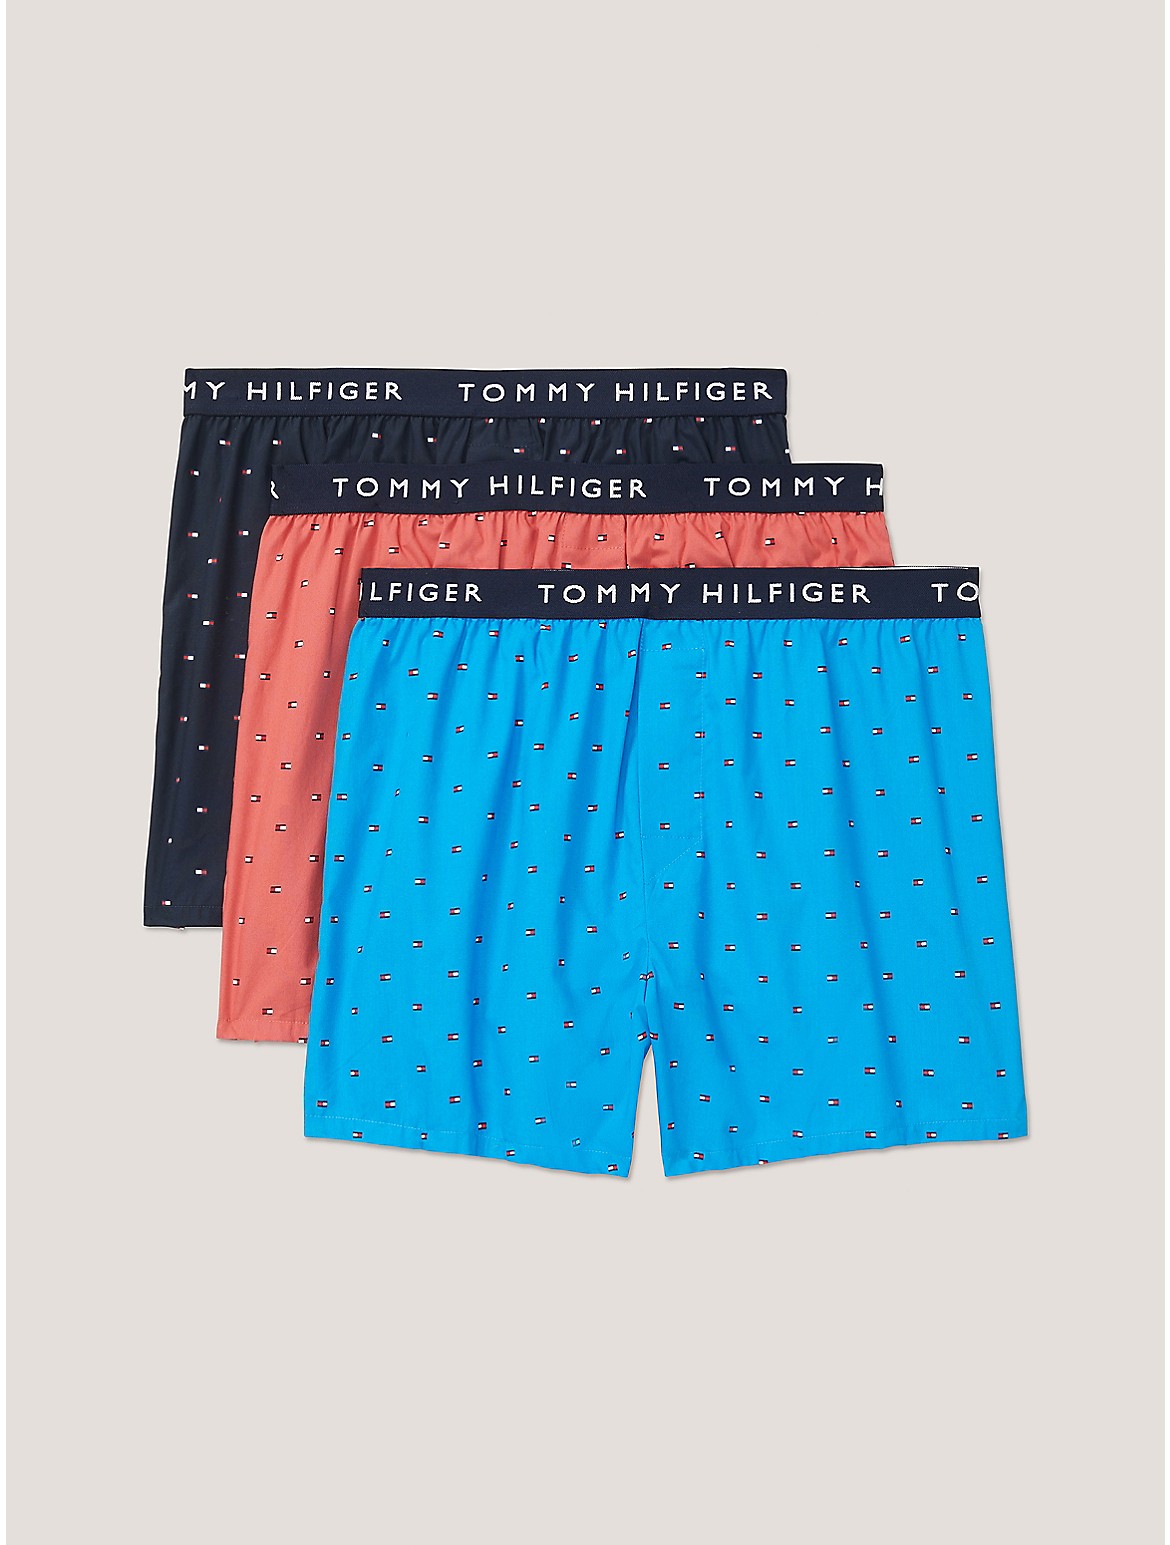 Tommy Hilfiger Men's Cotton Classics Slim Fit Boxer 3-Pack